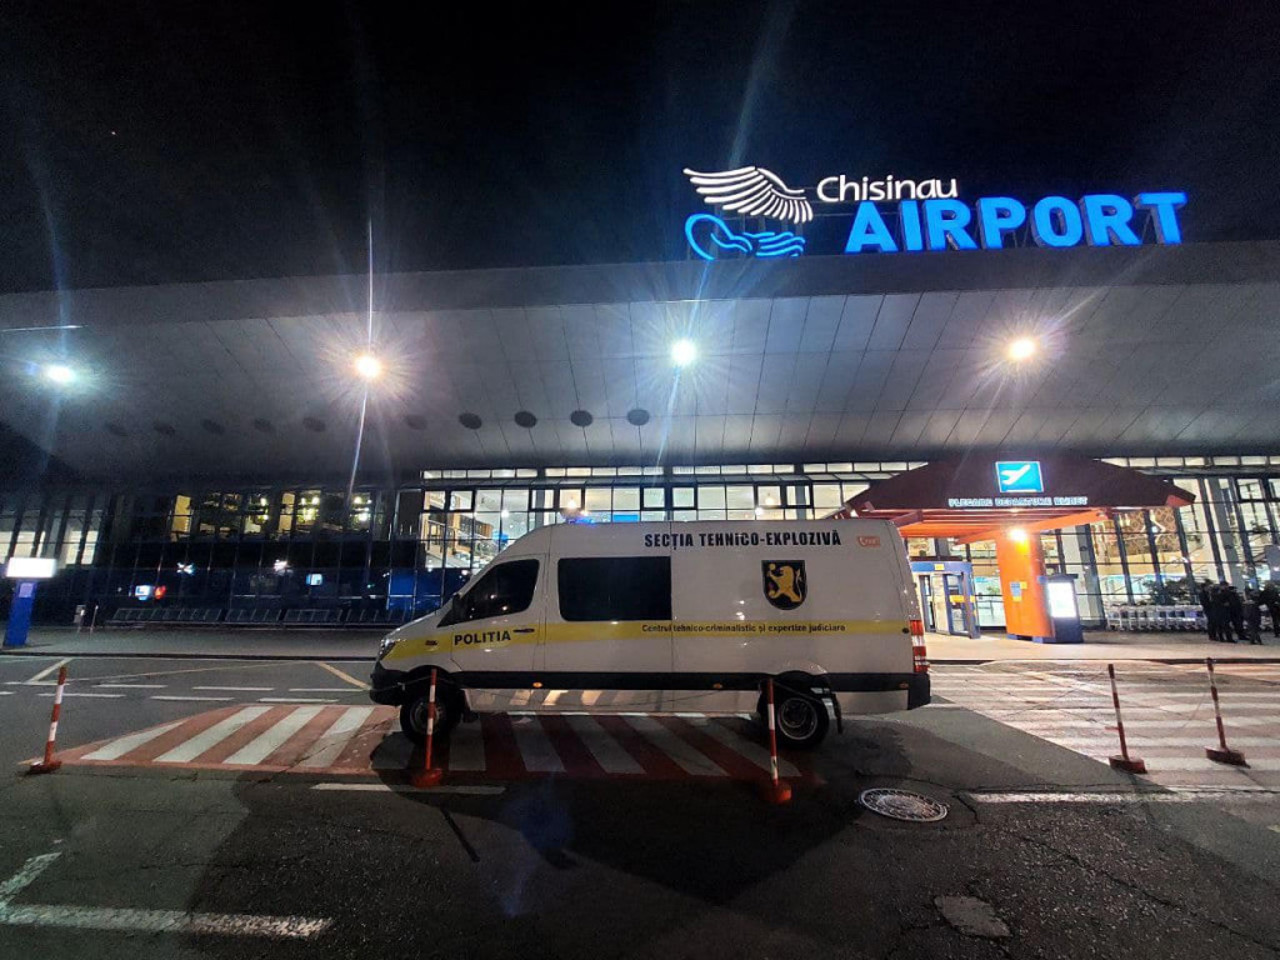 Новое сообщение об угрозе взрыва в Международном аэропорту Кишинэу. Люди были эвакуированы